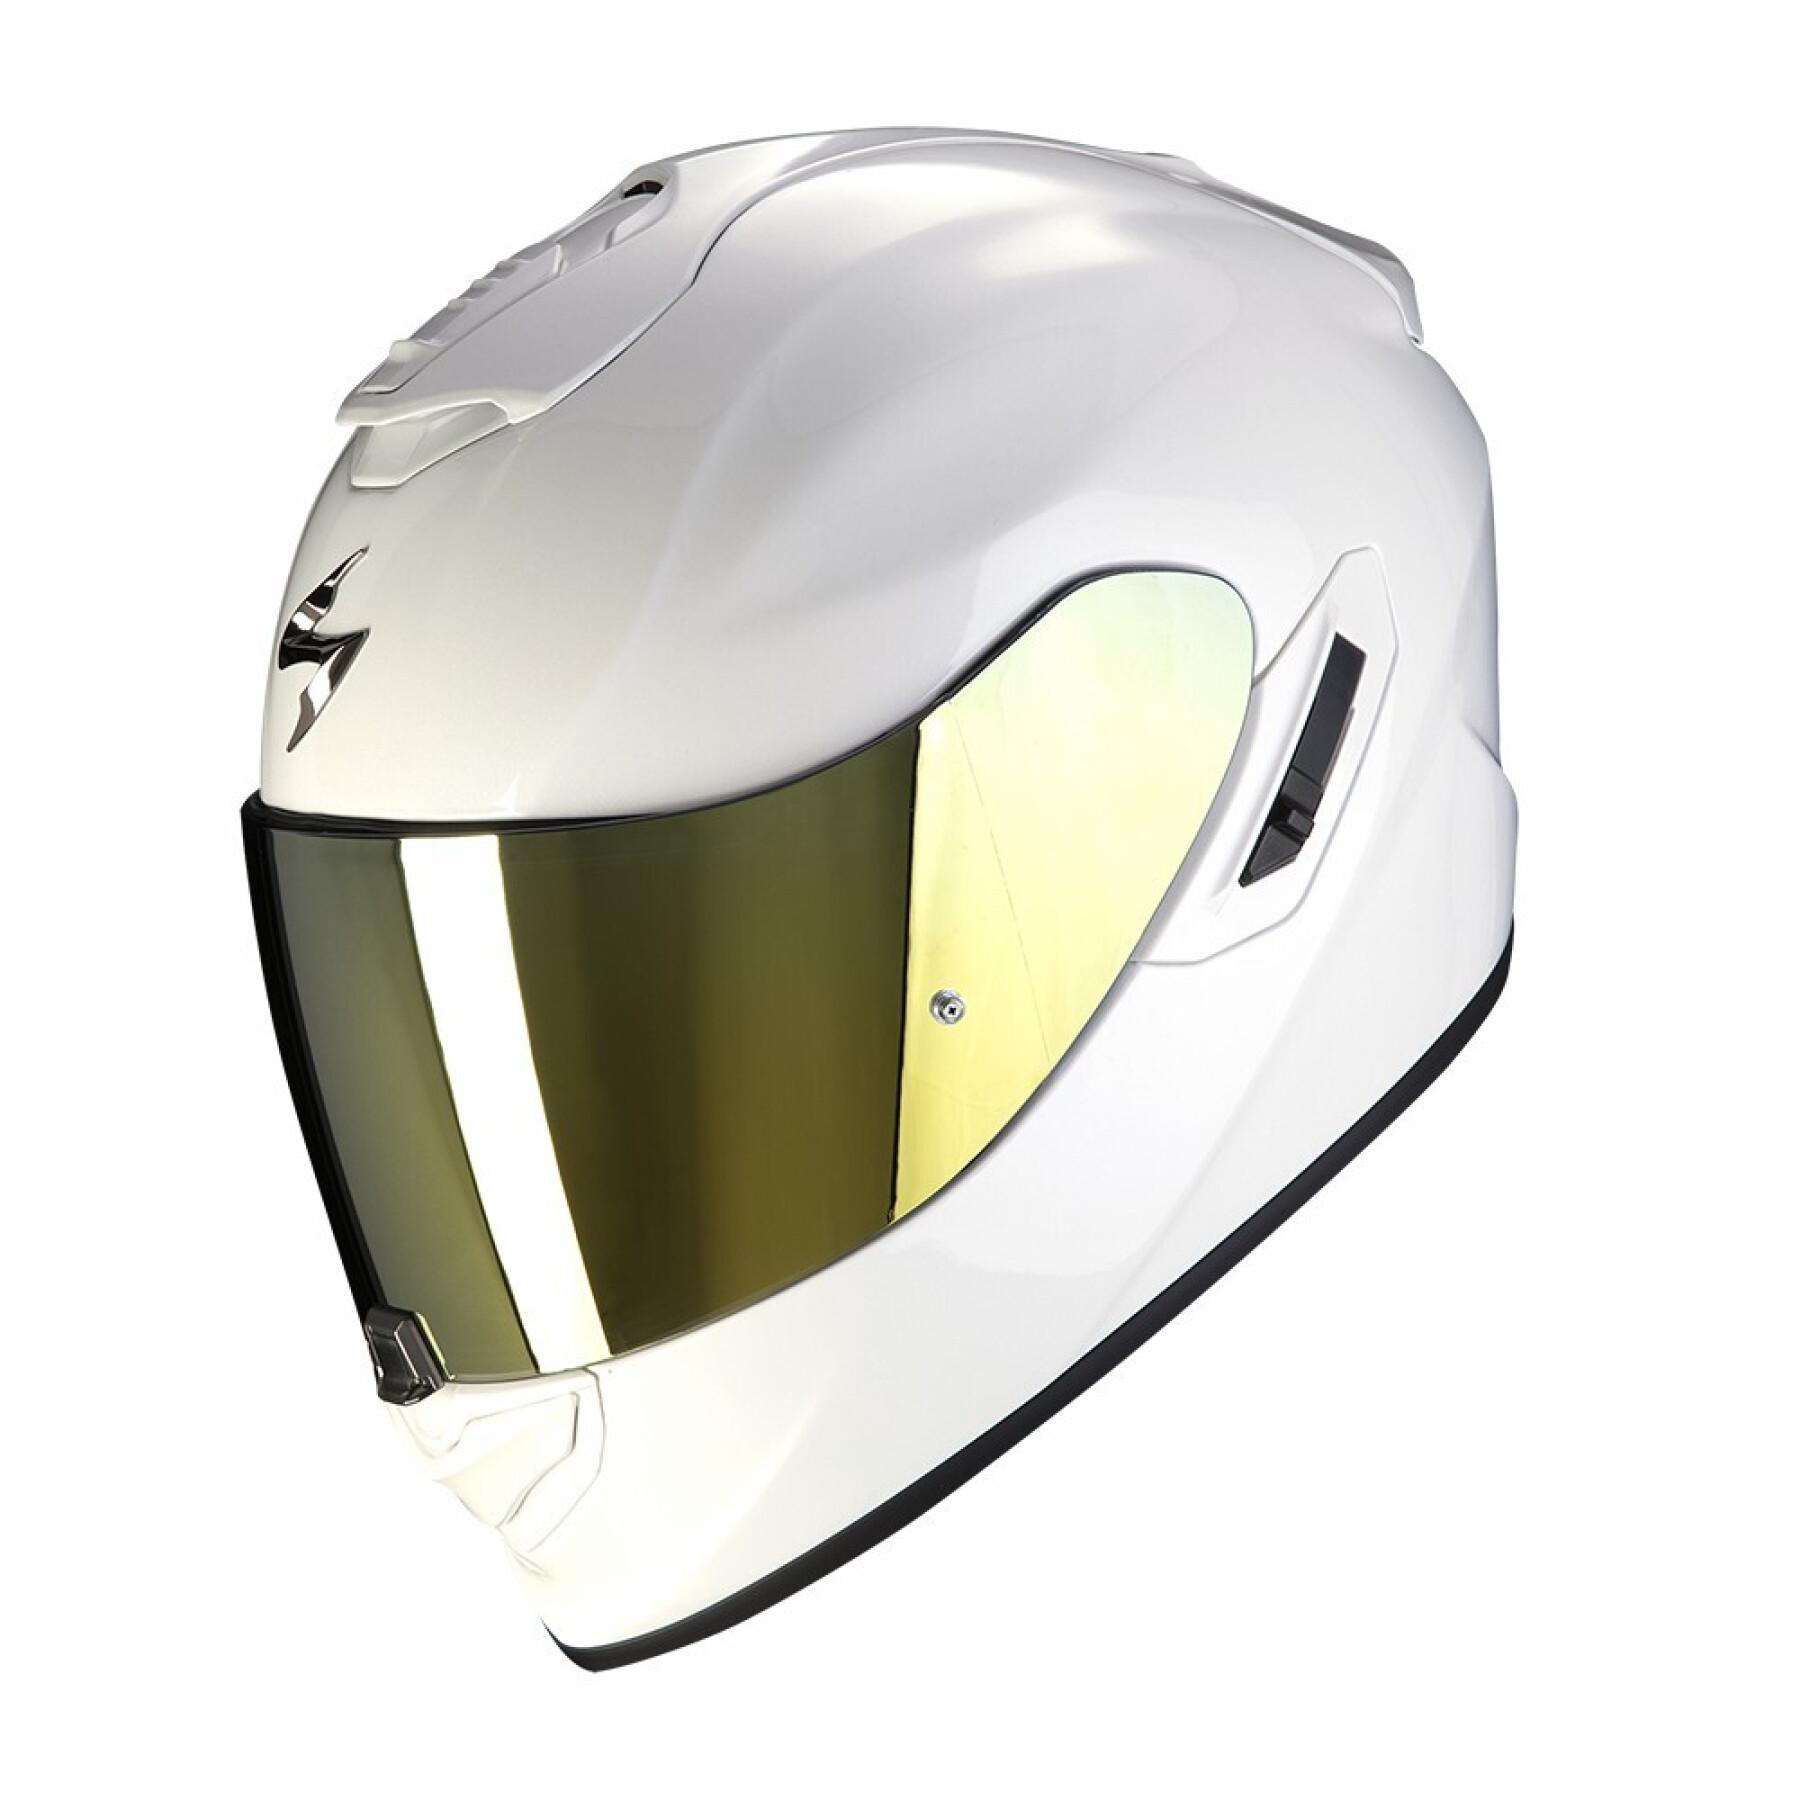 Kask motocyklowy z pełną twarzą Scorpion Exo-1400 Evo Air Solid ECE 22-06